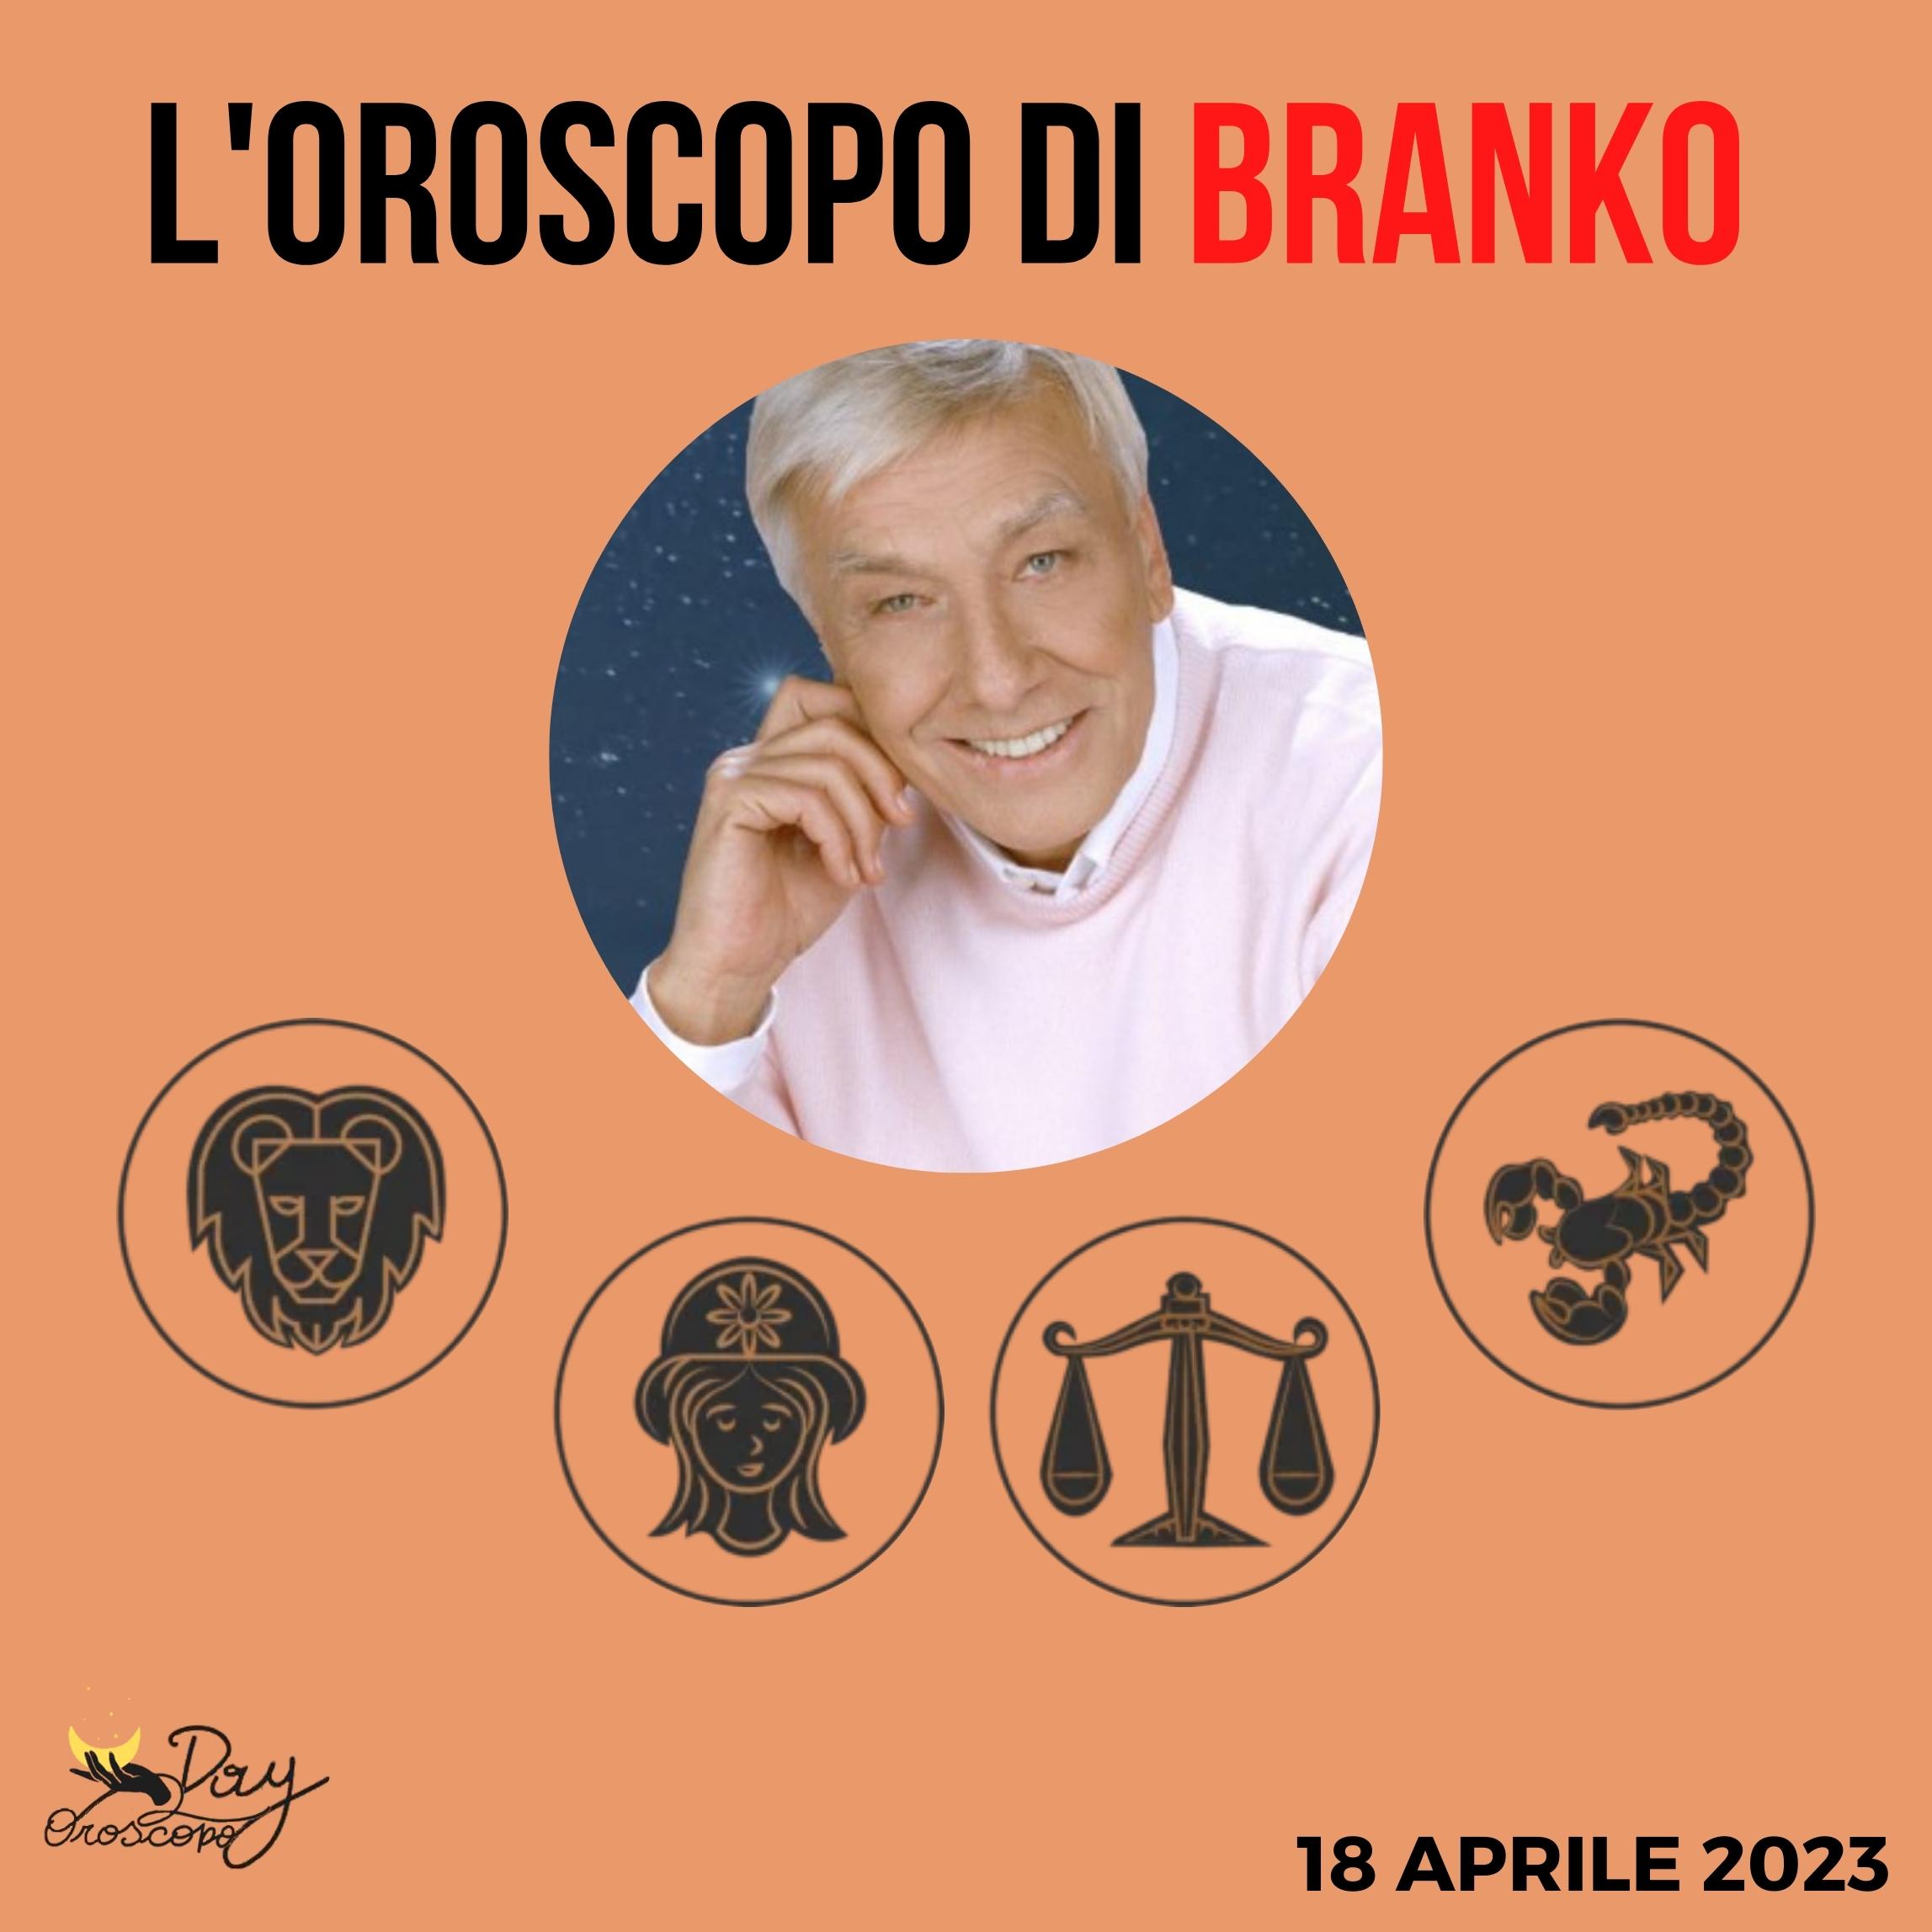 Oroscopo oggi Branko 18 aprile 2023 Leone Vergine Bilancia Scorpione